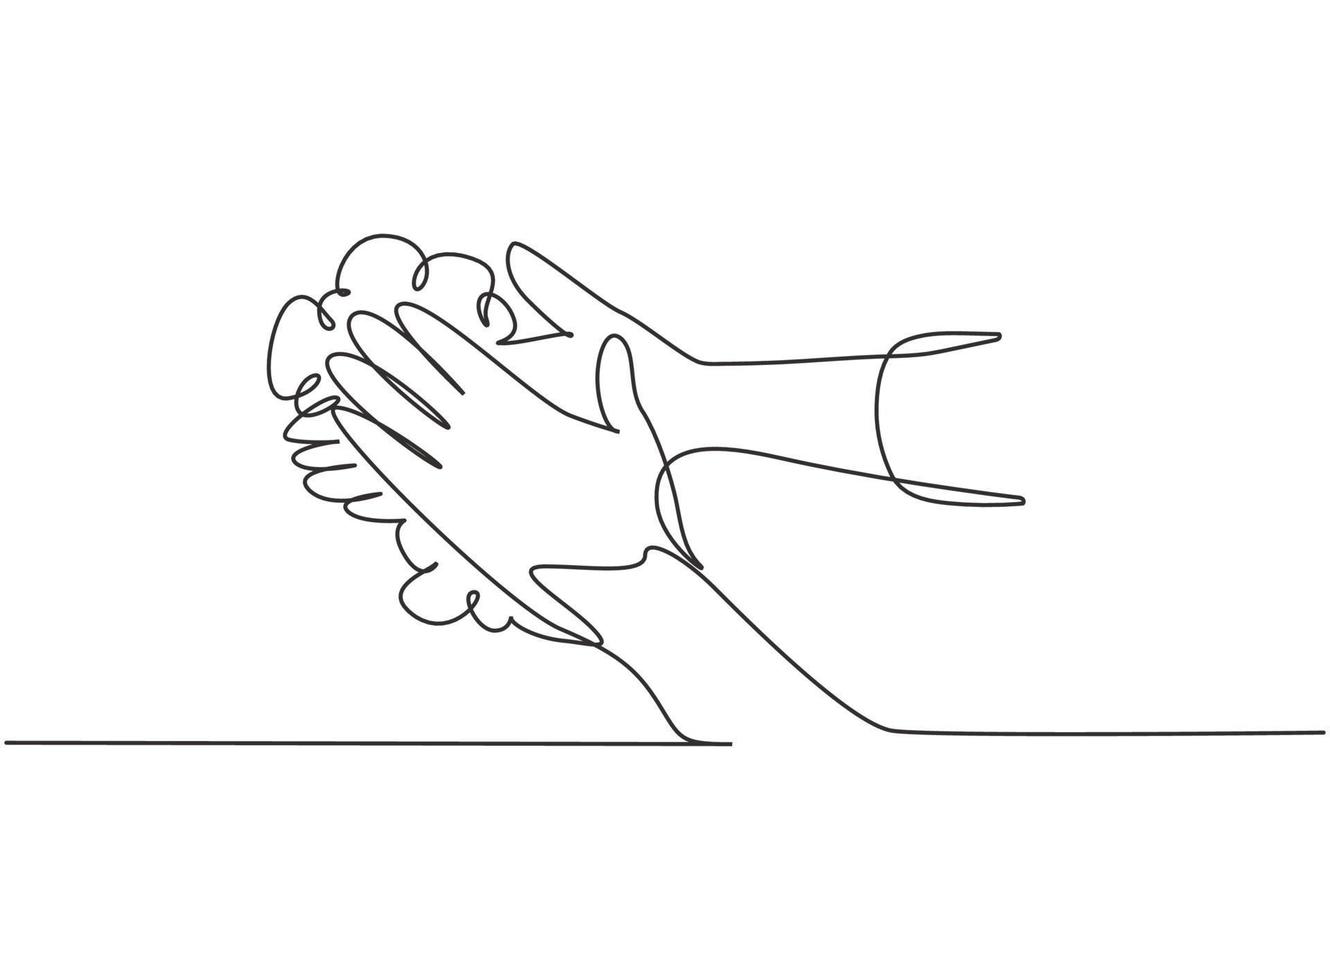 contínua uma linha desenhando doze passos lavando as mãos esfregando as palmas das mãos com sabão e água corrente. prevenção precoce contra o vírus corona. ilustração gráfica do vetor do desenho do desenho de linha única.